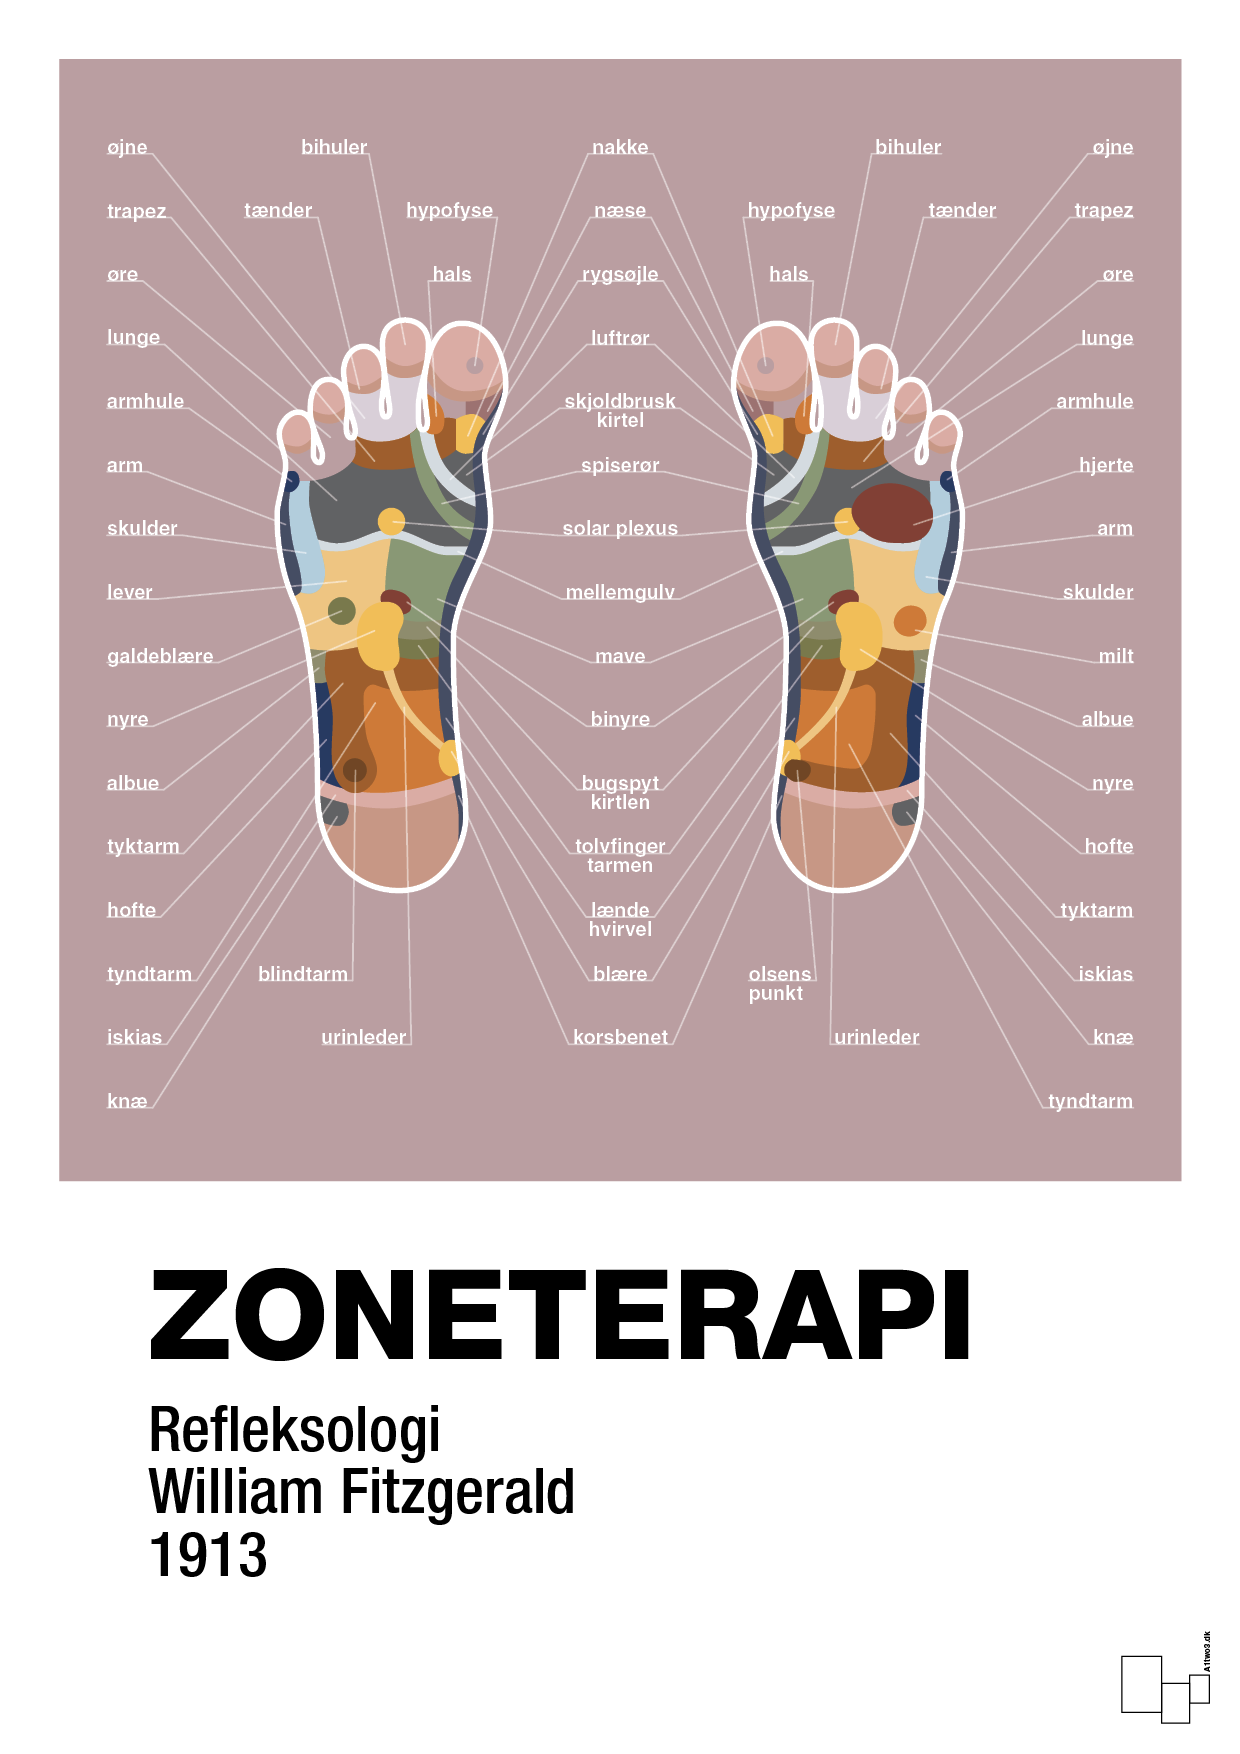 zoneterapi - Plakat med Videnskab i Light Rose